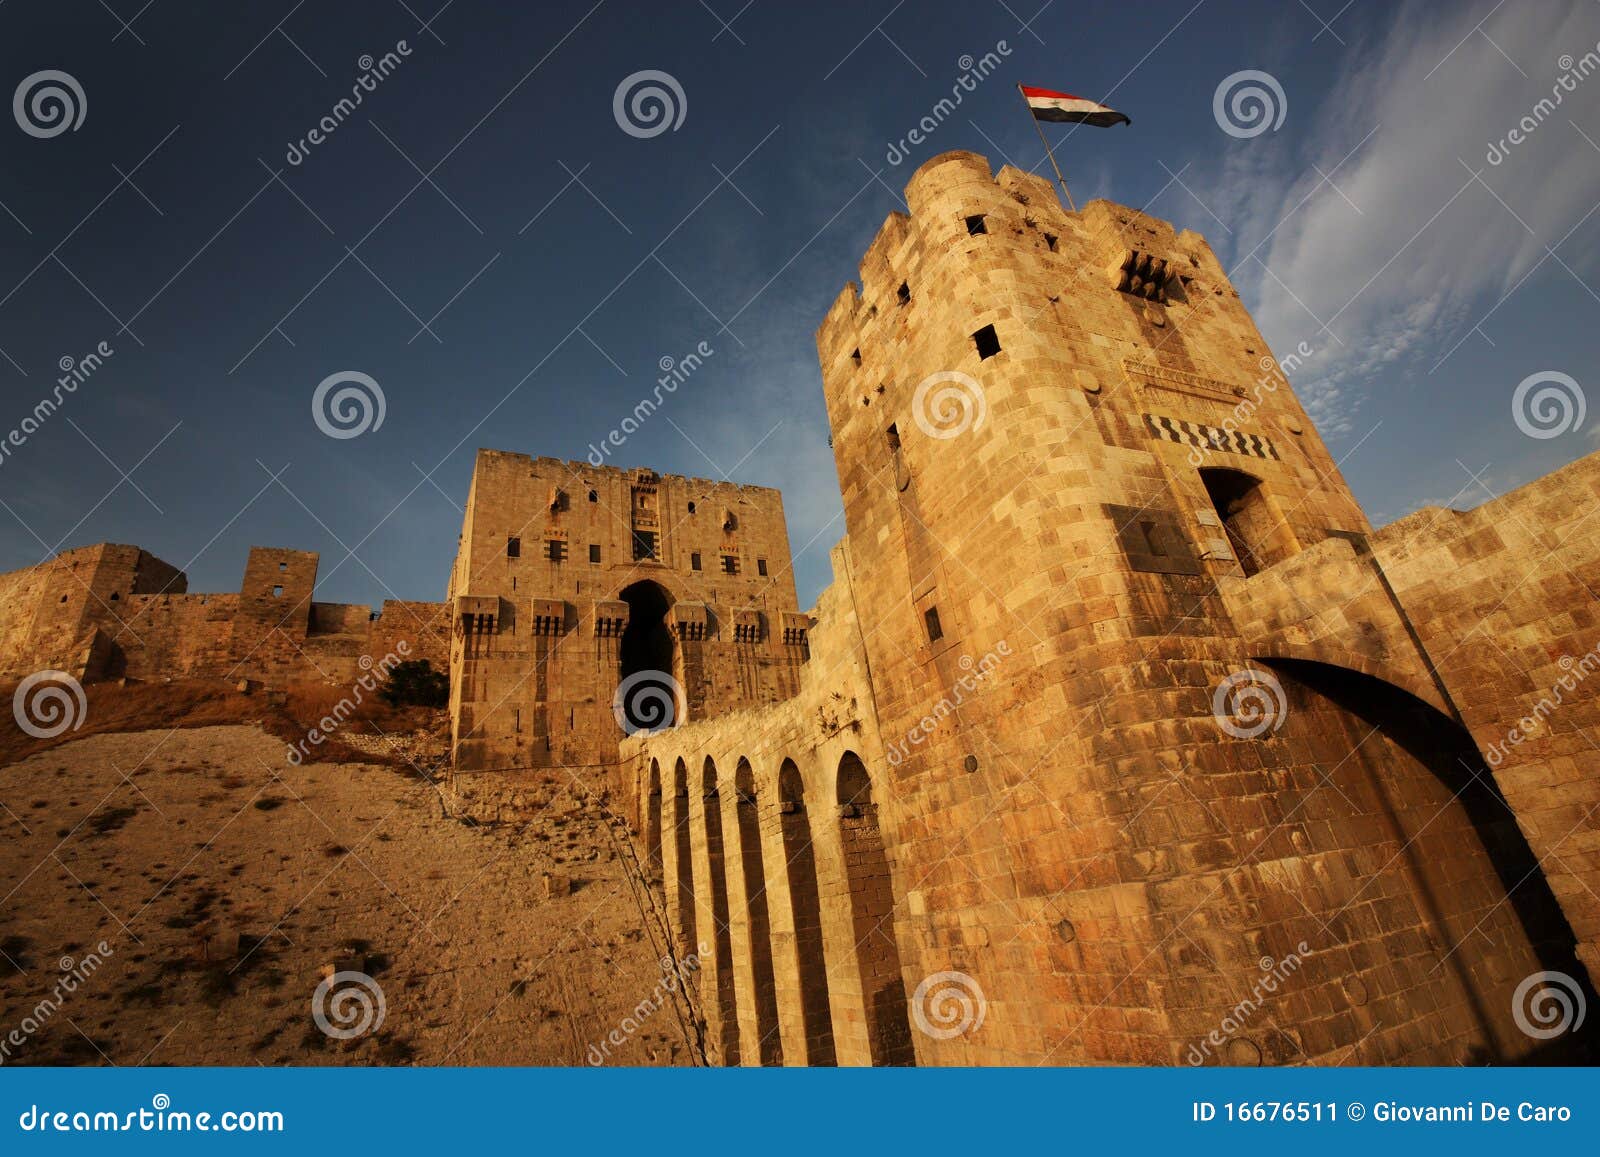 aleppo castle in syria